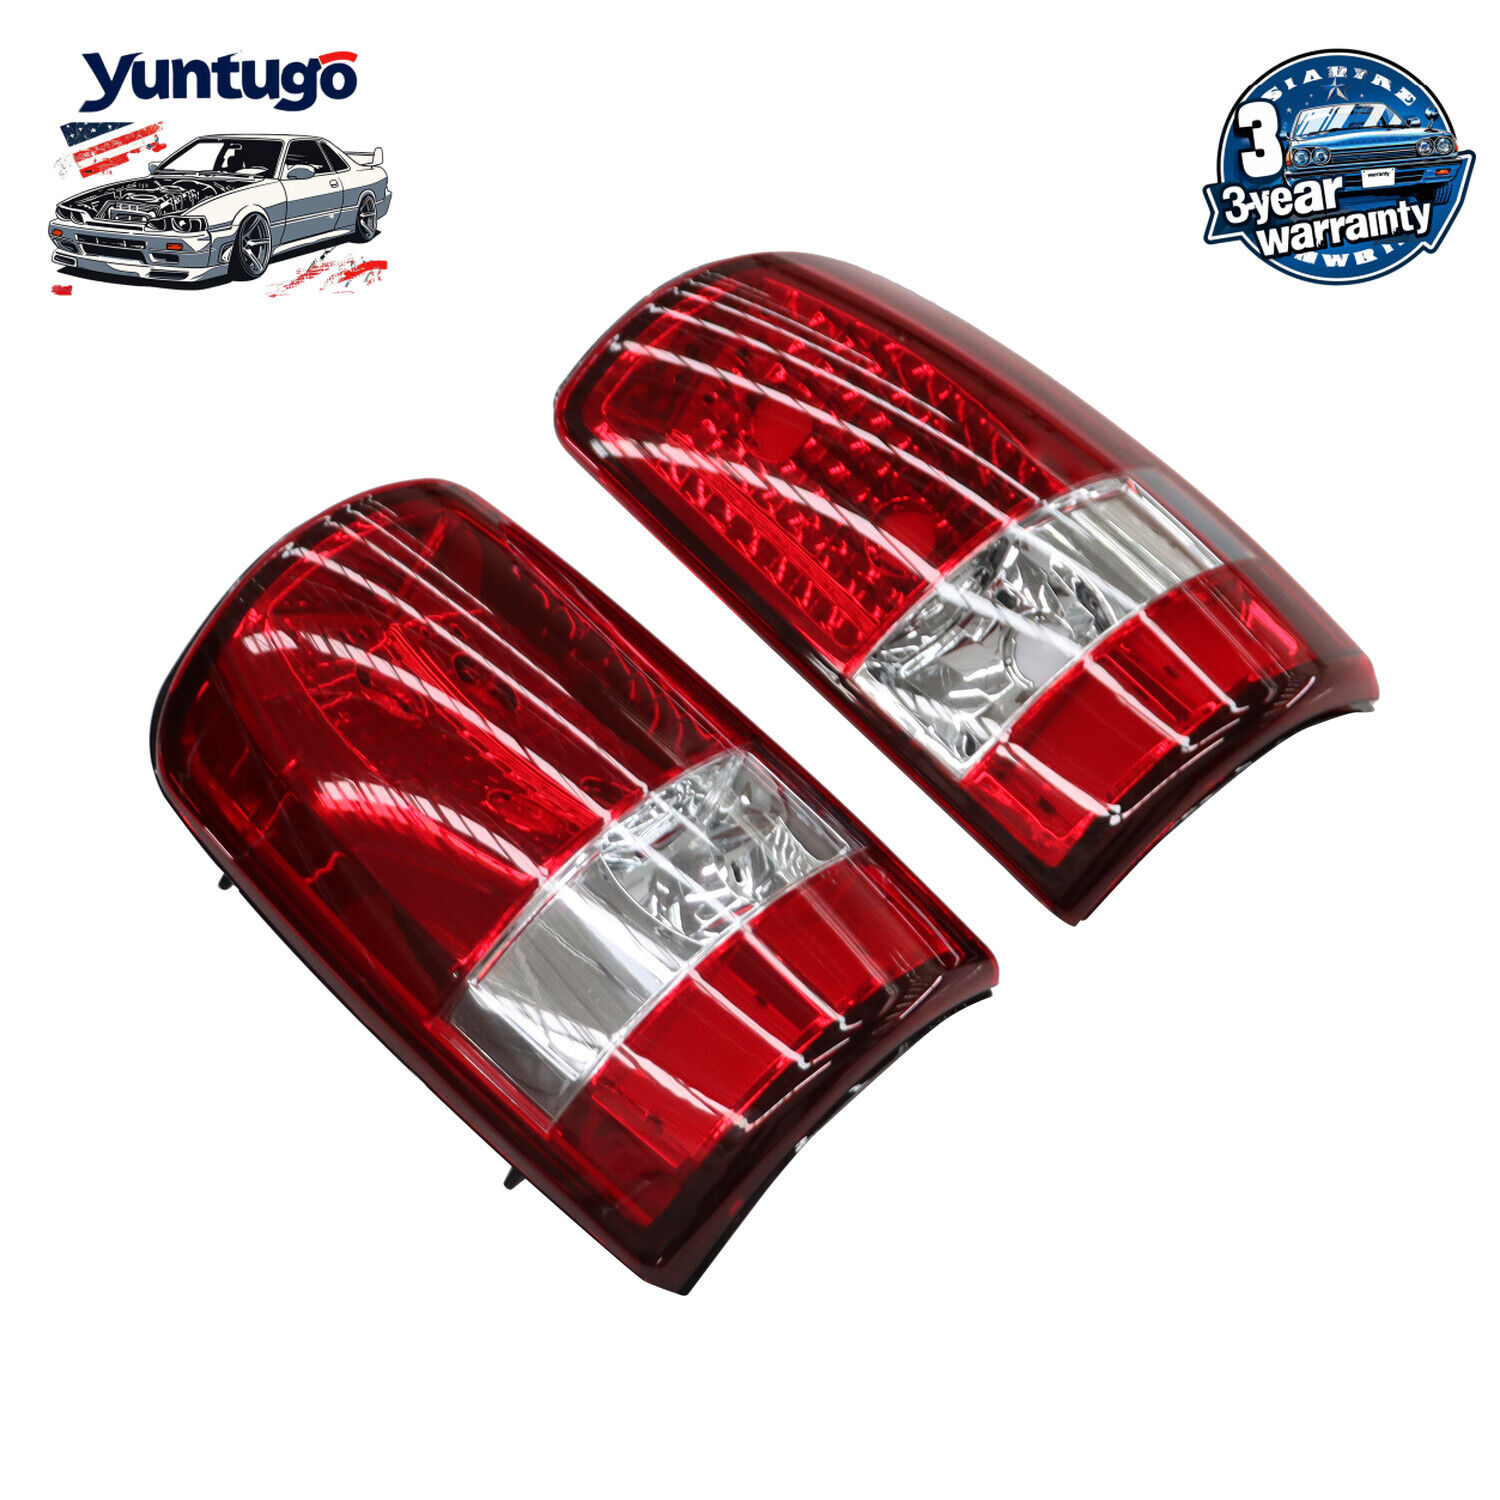 Red Tail Lights Brake Lamps For Chevy Suburban Tahoe GMC Yukon/ Yukon XL 00-06